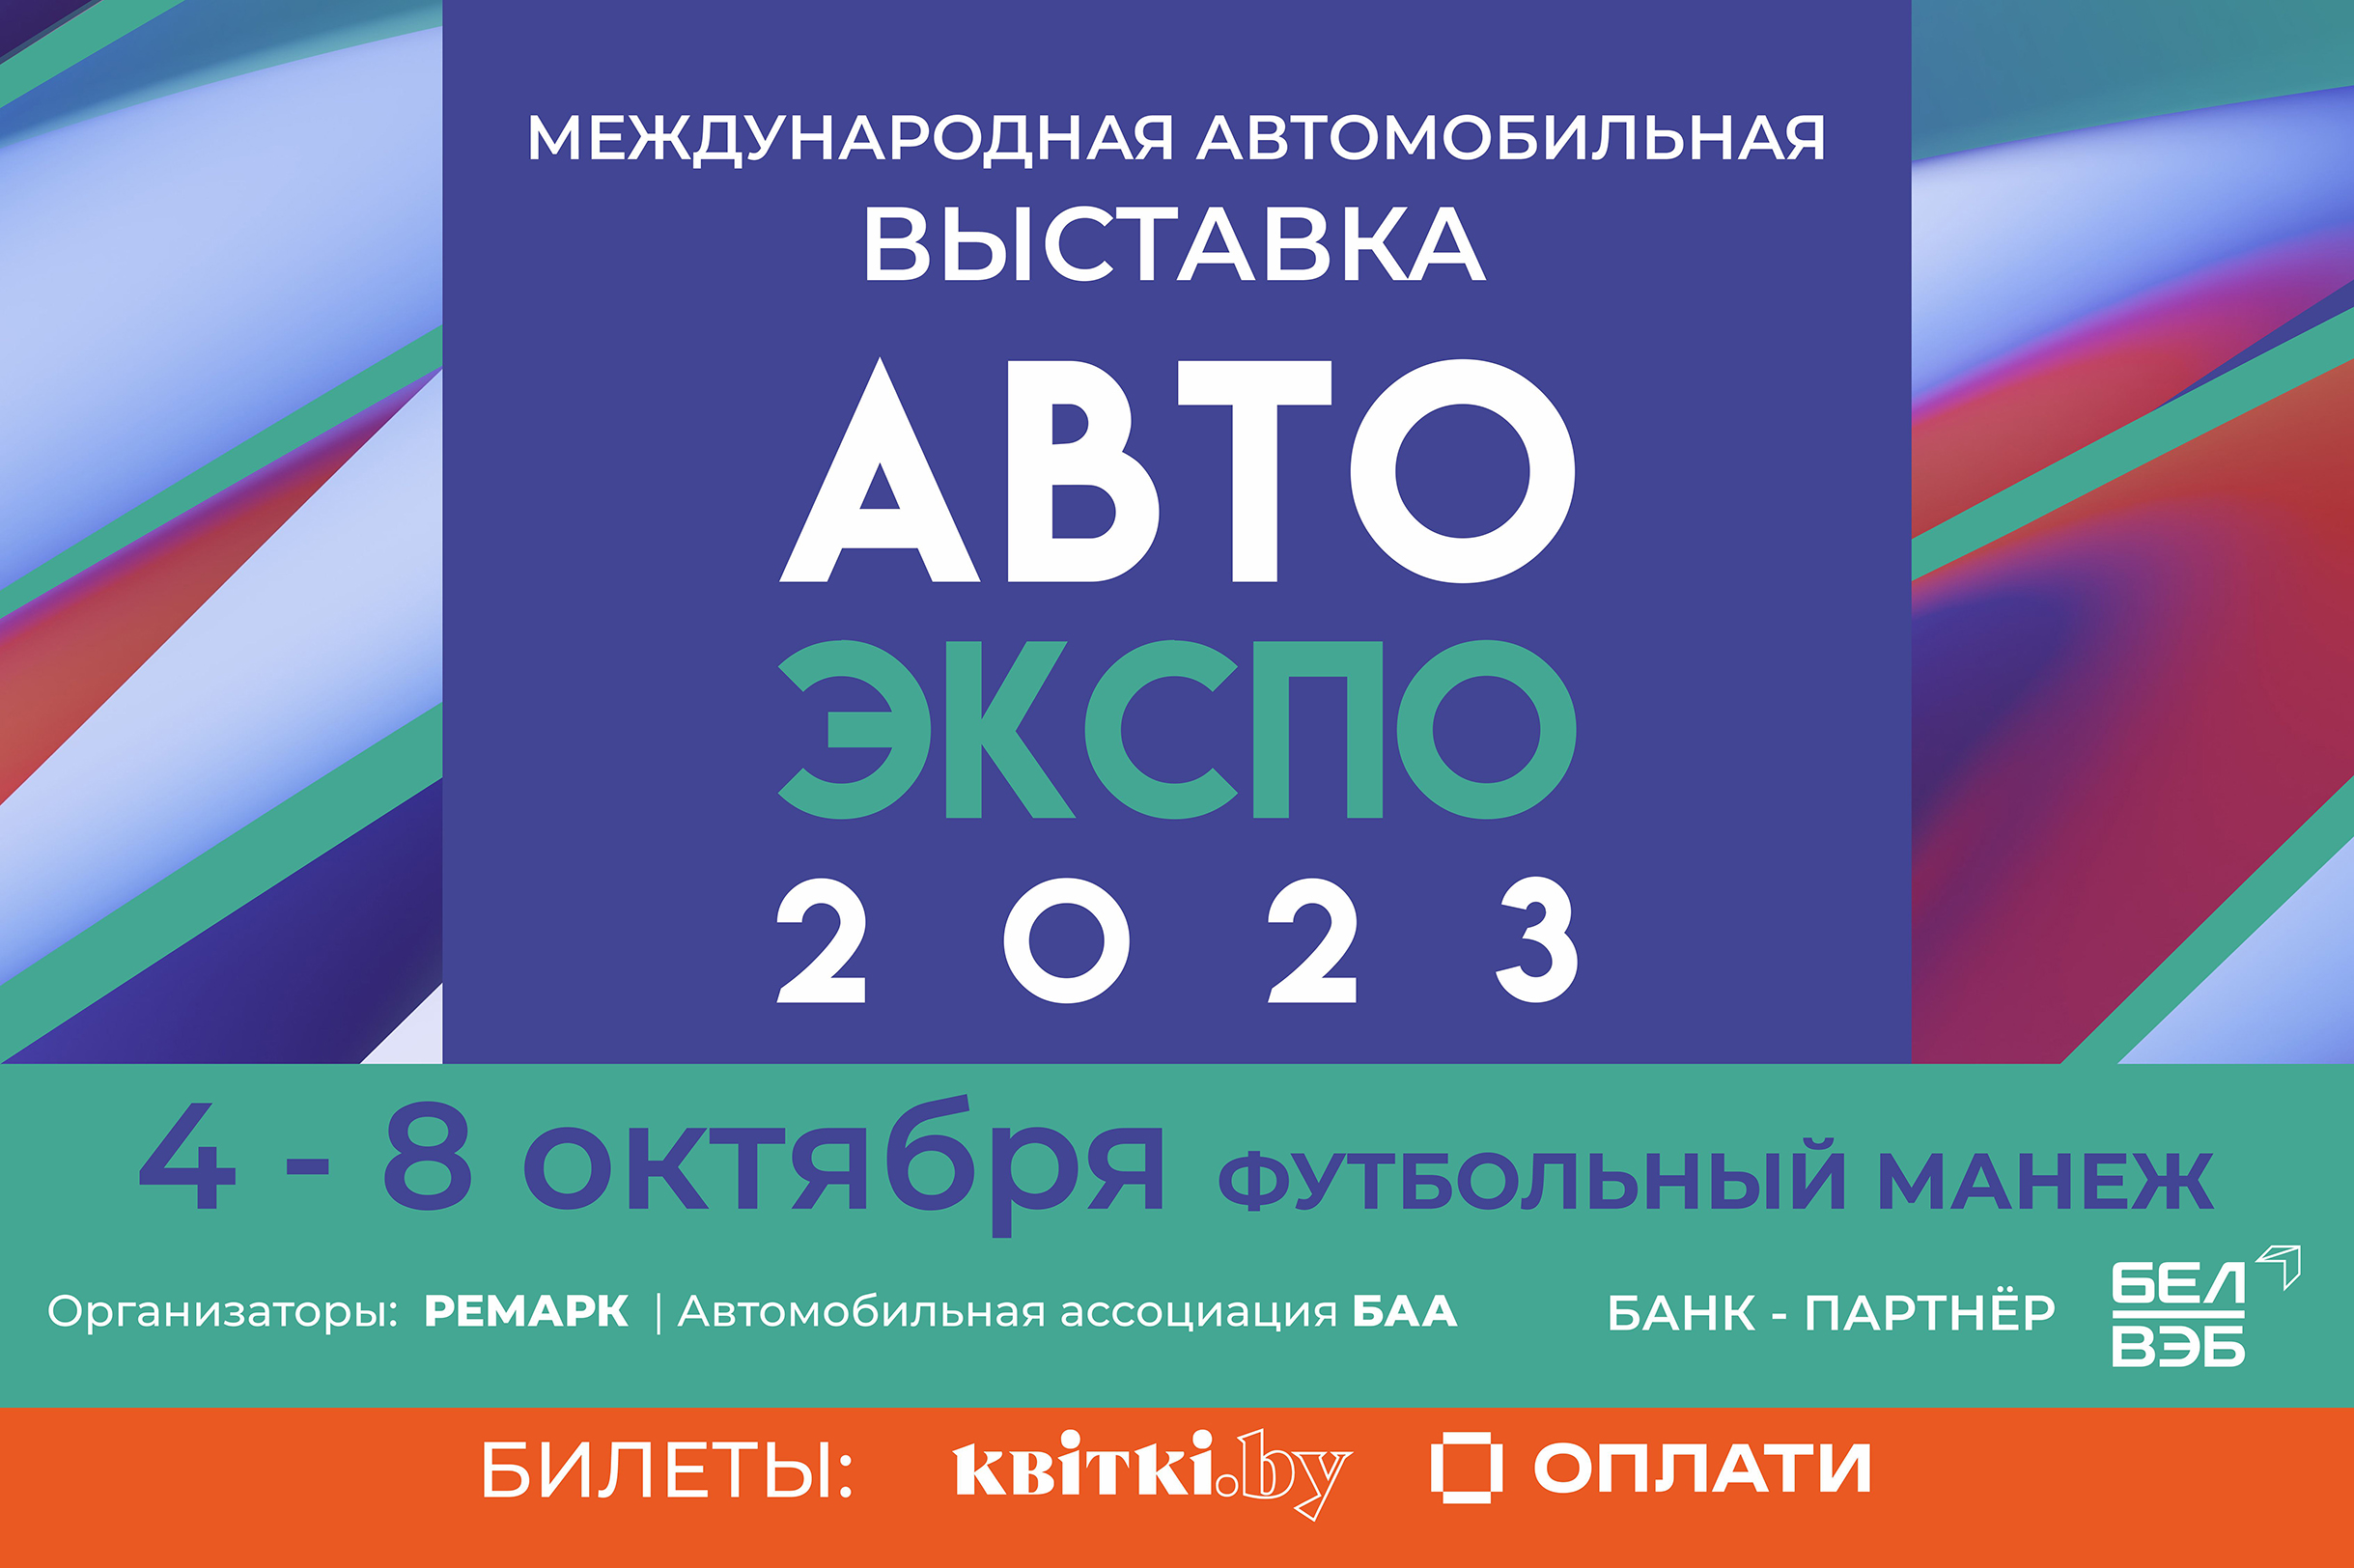 Компания Колесоплюс представила новые бренды на международной выставке  "Авто Экспо-2023" в Минске